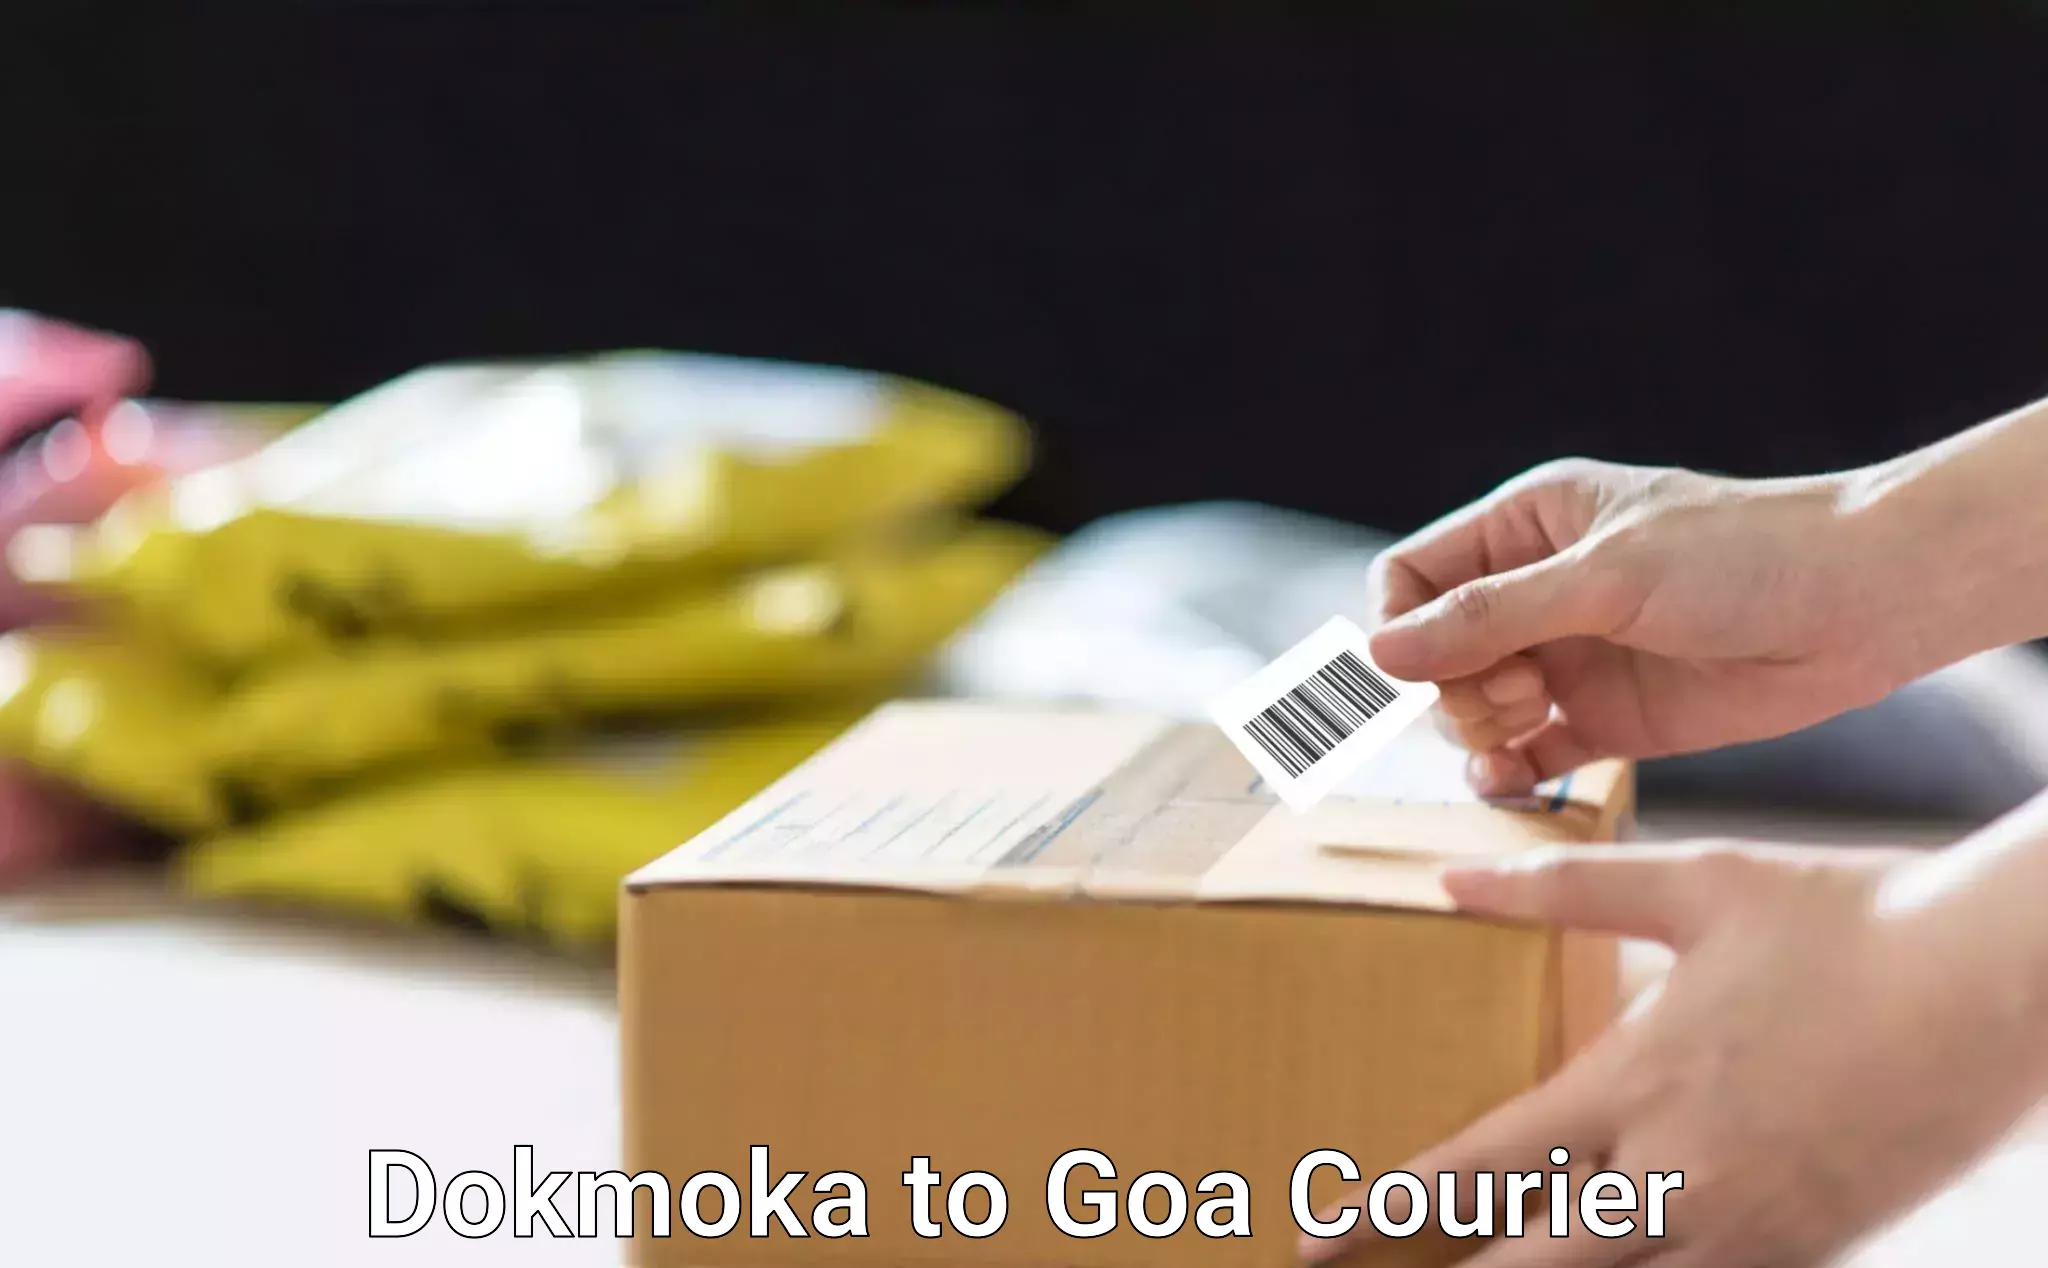 Express postal services Dokmoka to Goa